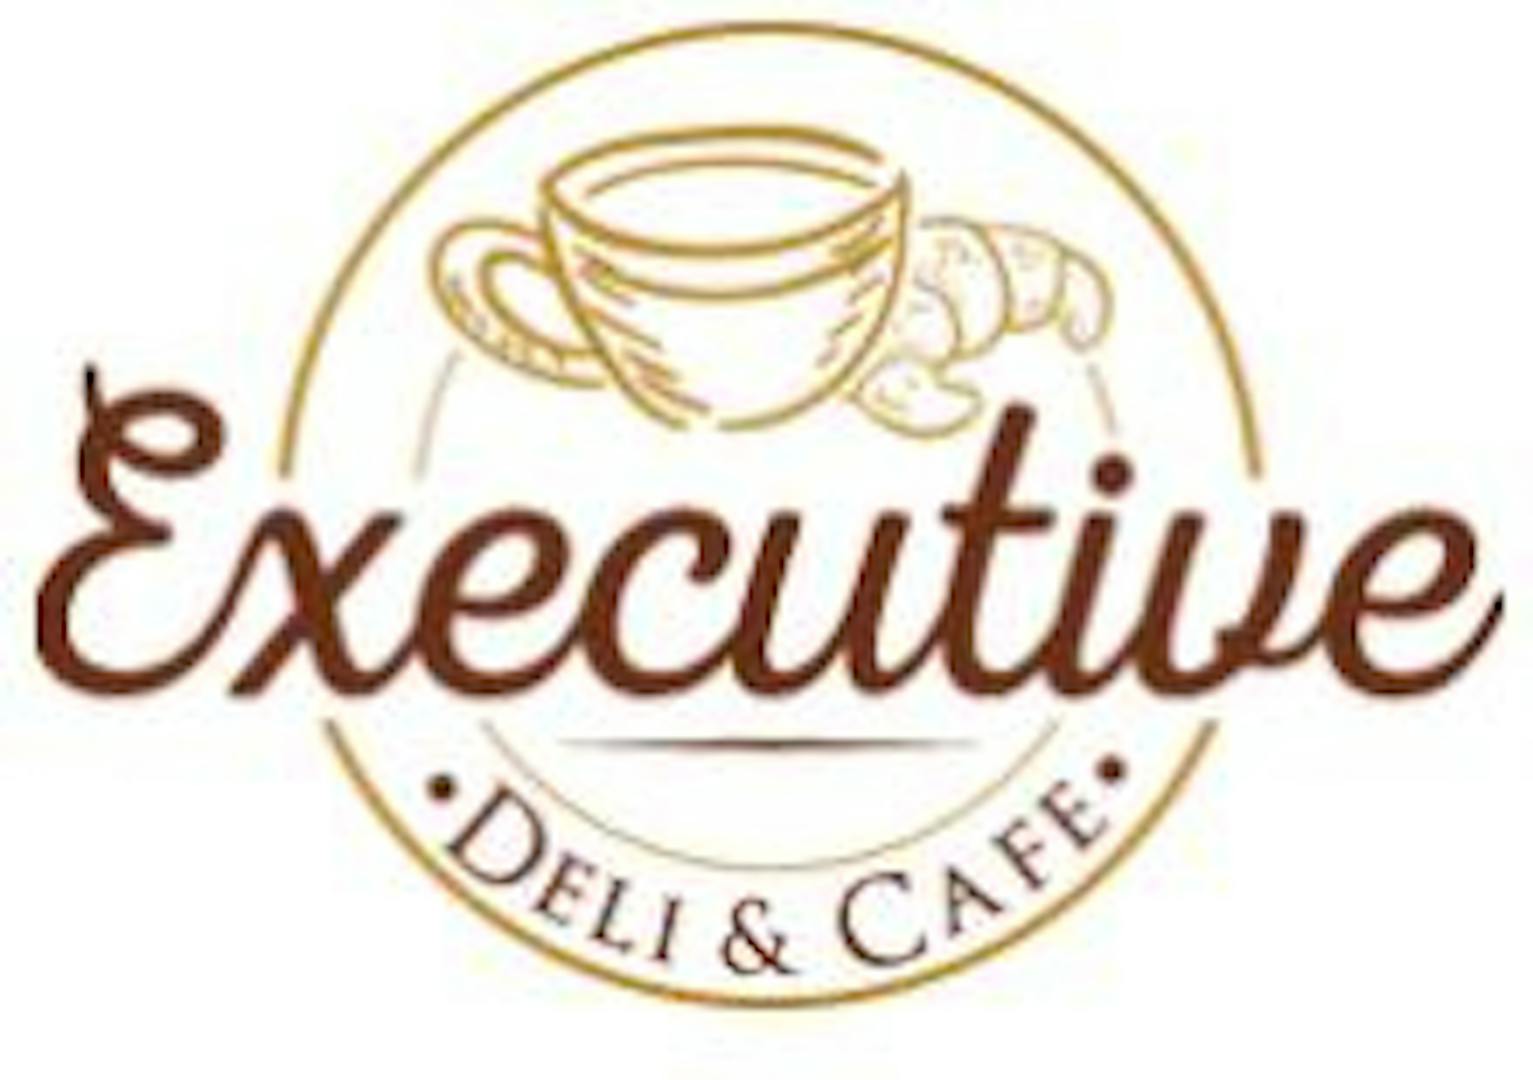 Executive Deli & Cafe